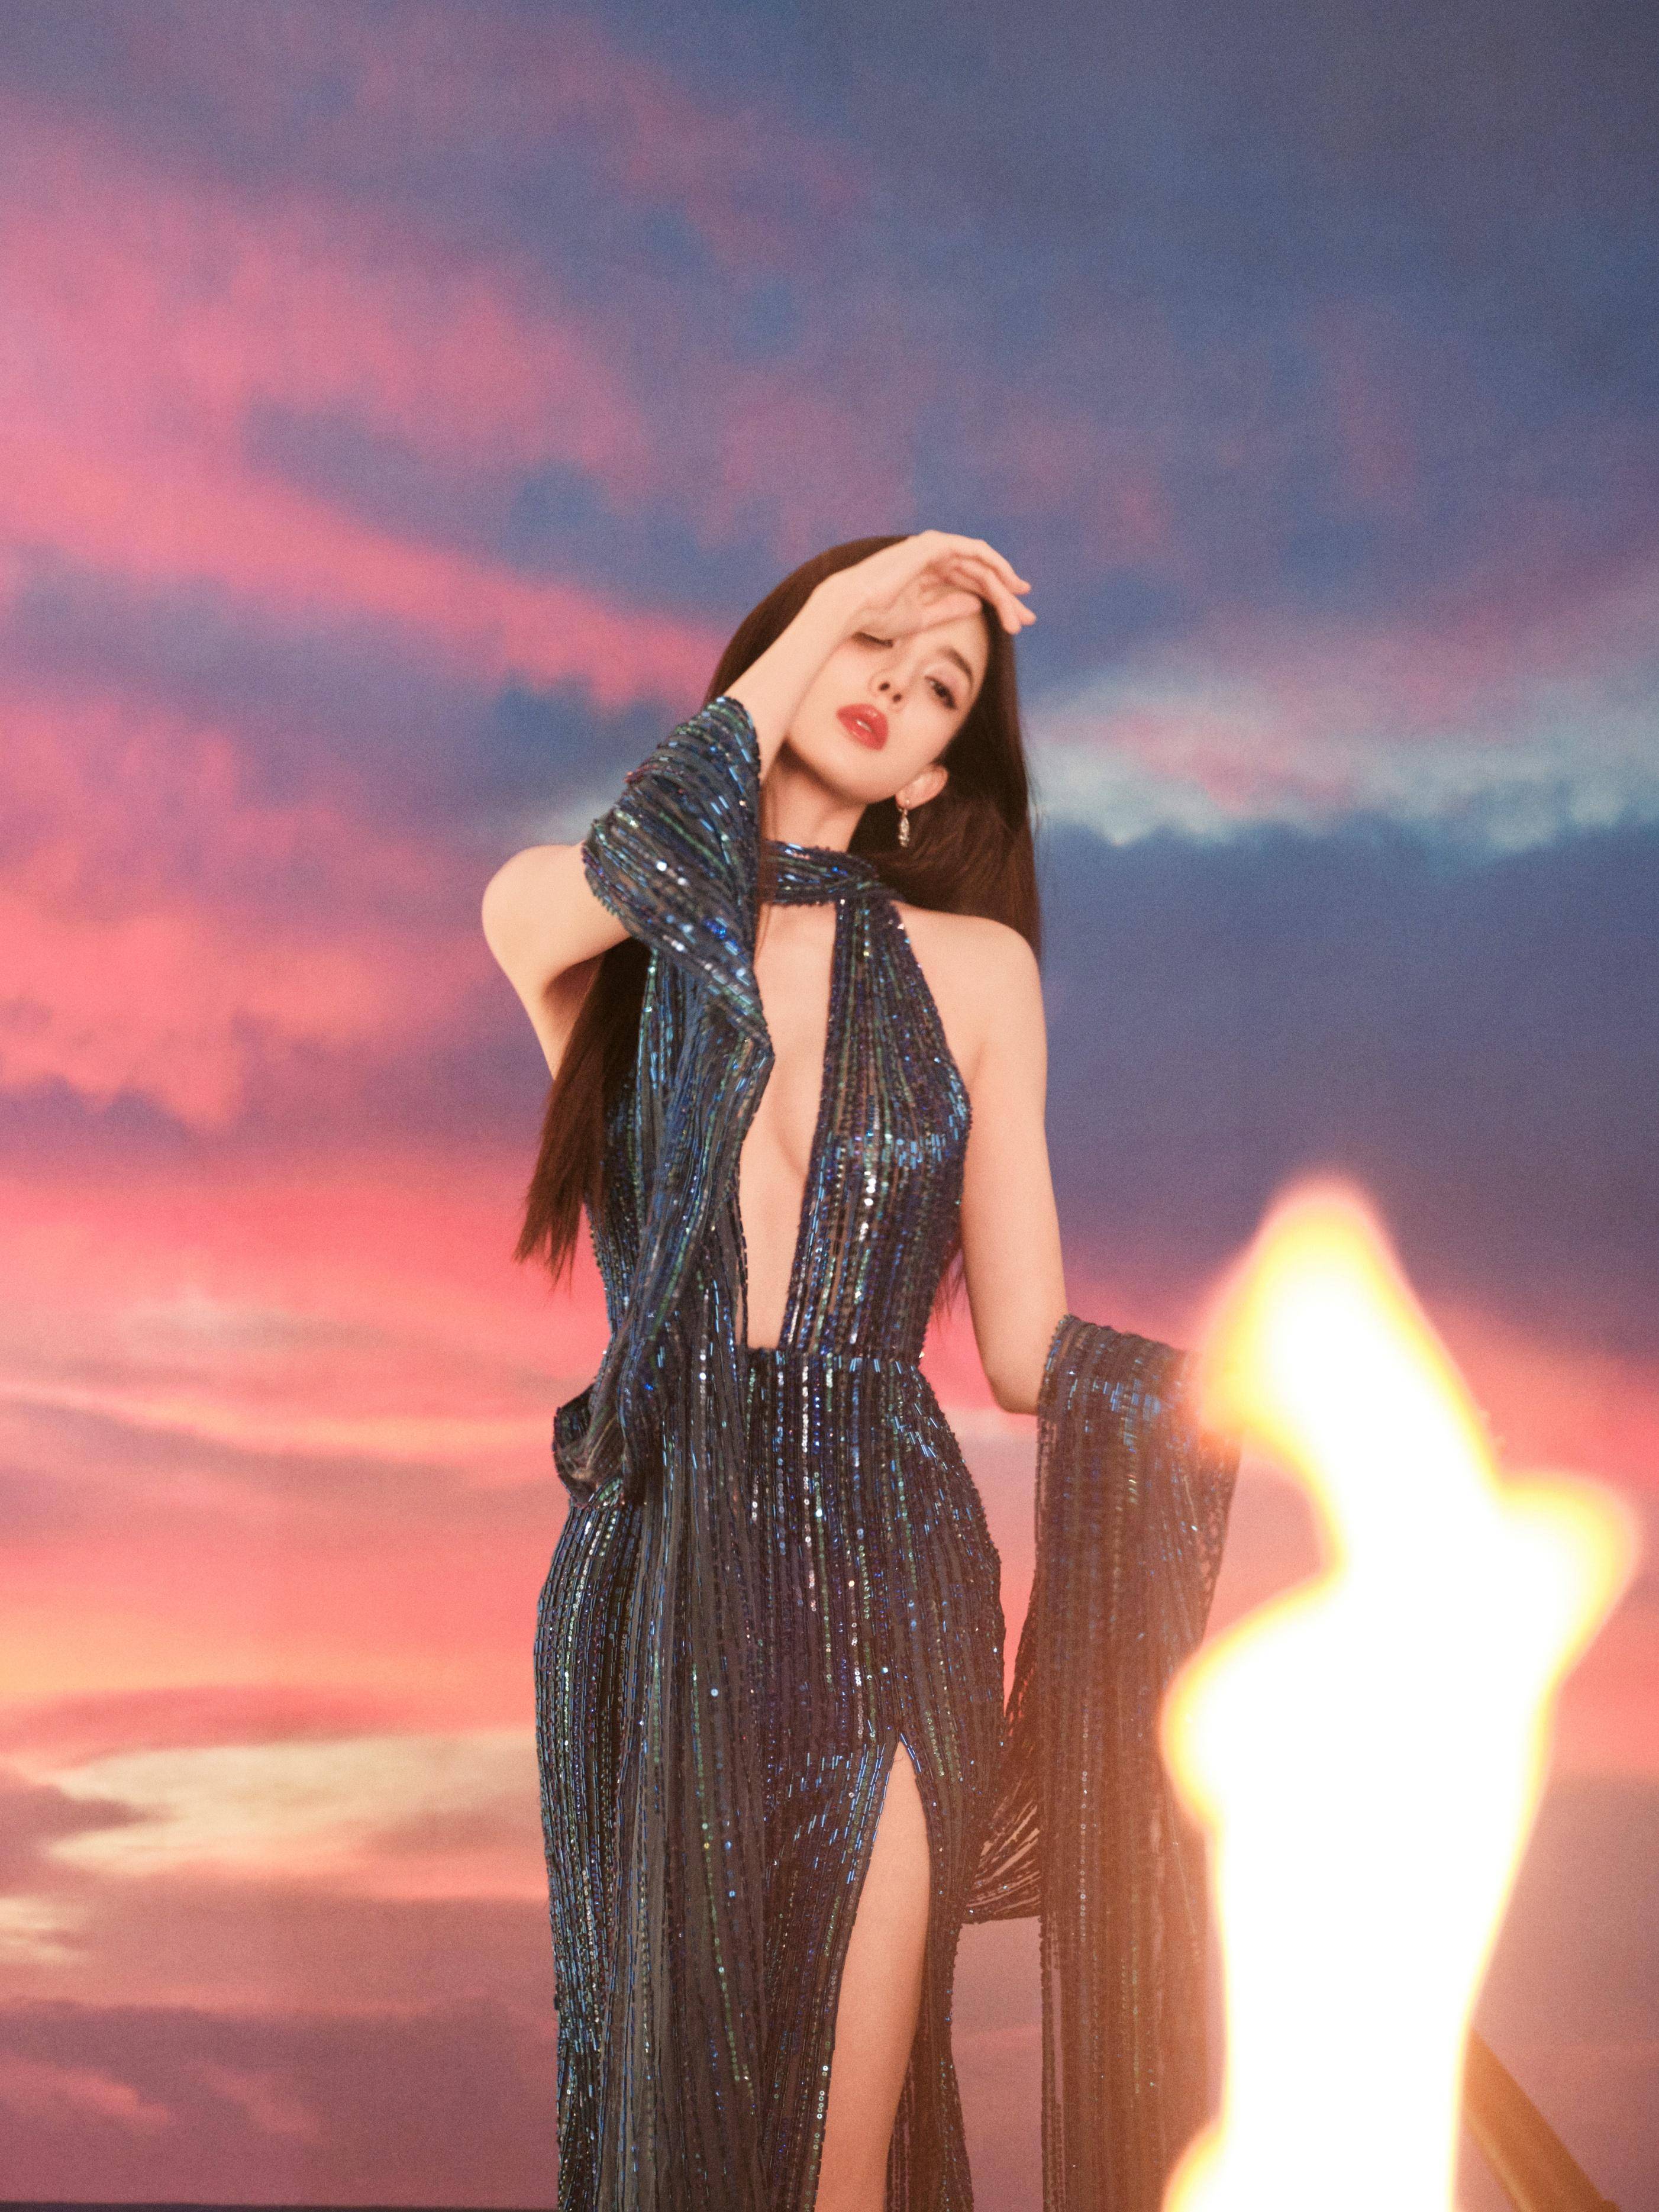 照片中,古力娜扎的美如同一颗璀璨的明珠,照亮了整个夜空